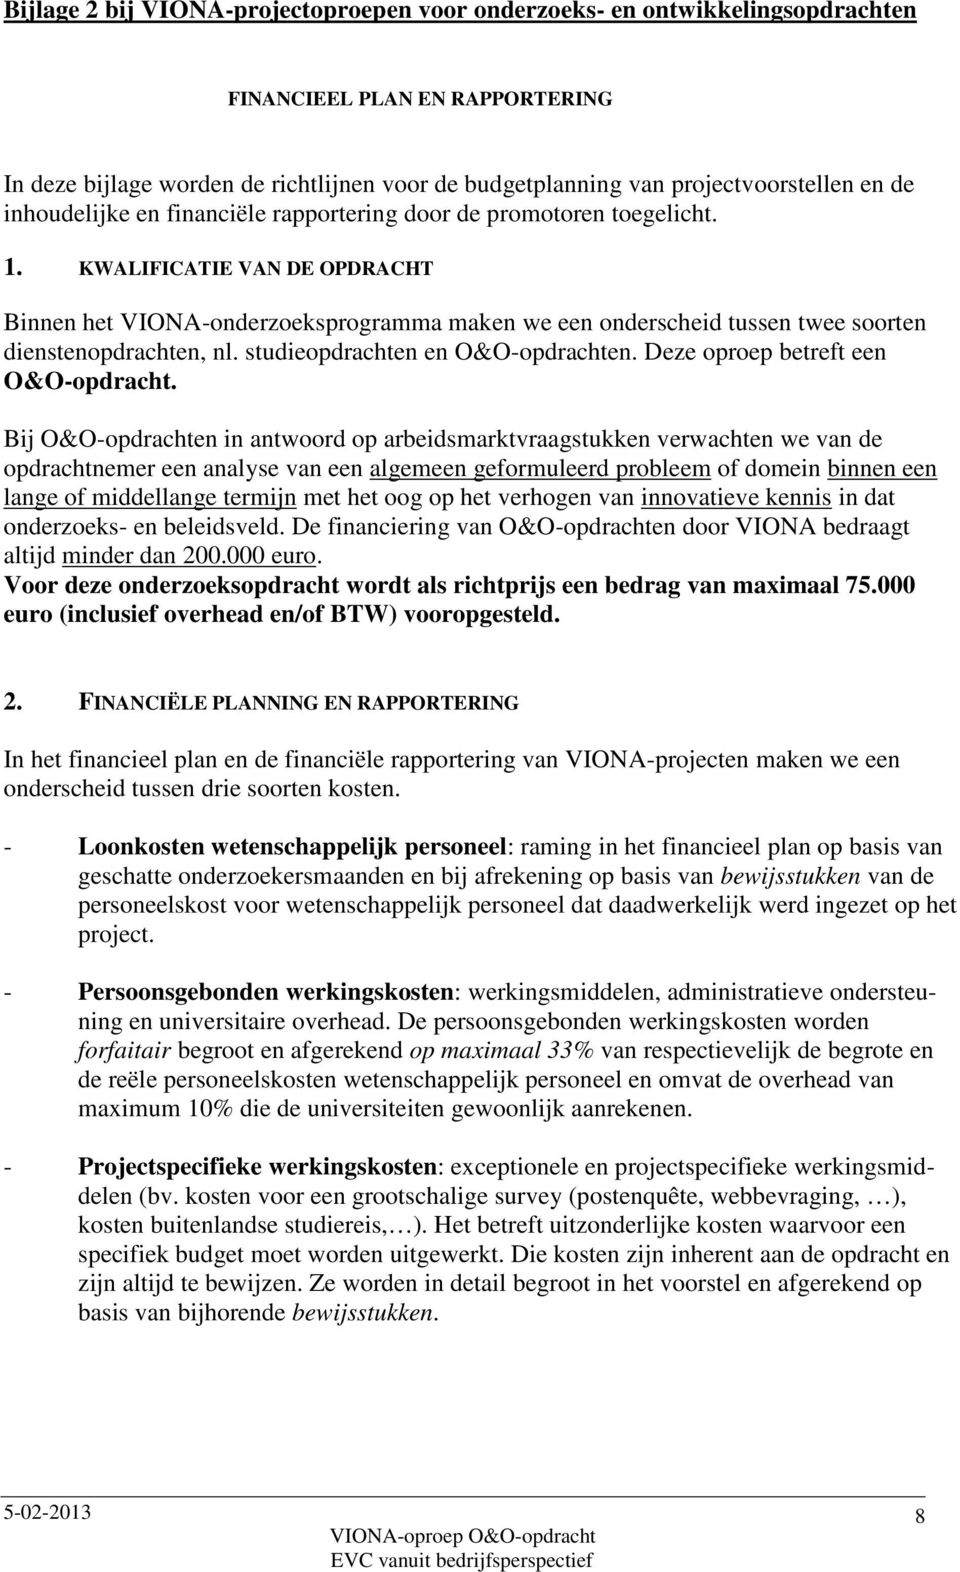 KWALIFICATIE VAN DE OPDRACHT Binnen het VIONA-onderzoeksprogramma maken we een onderscheid tussen twee soorten dienstenopdrachten, nl. studieopdrachten en O&O-opdrachten.